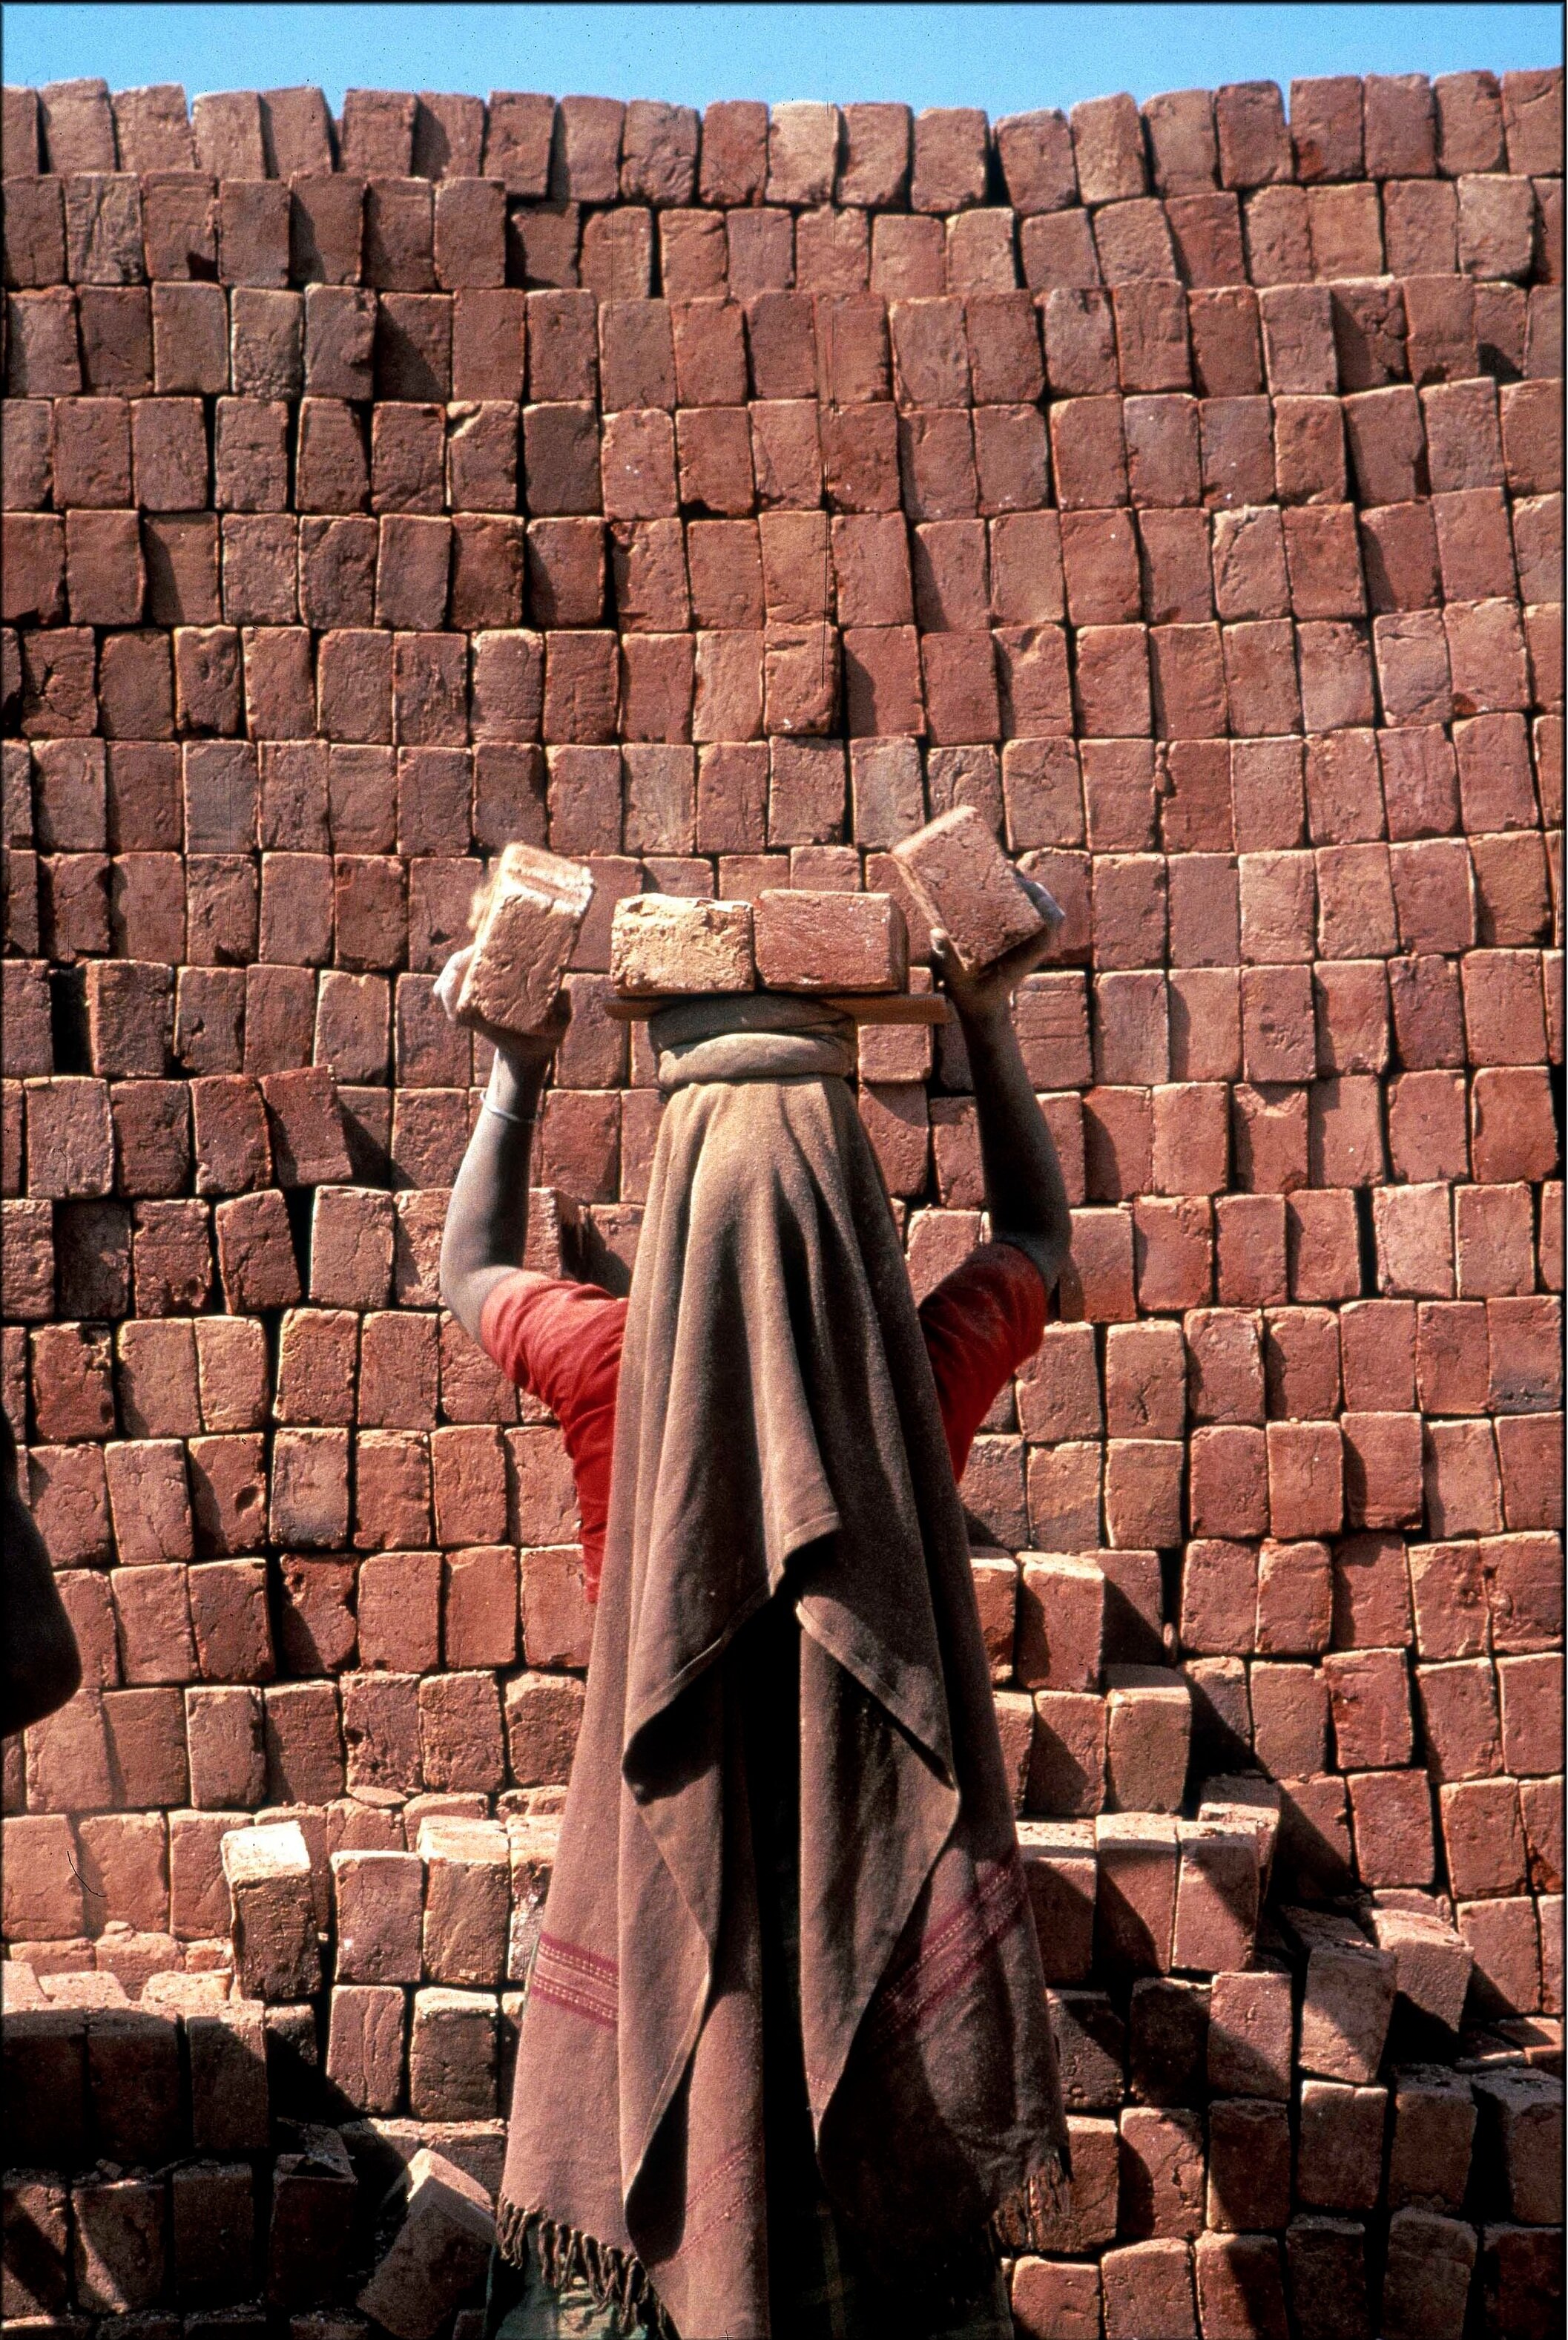  Brick kilns in Dehli 